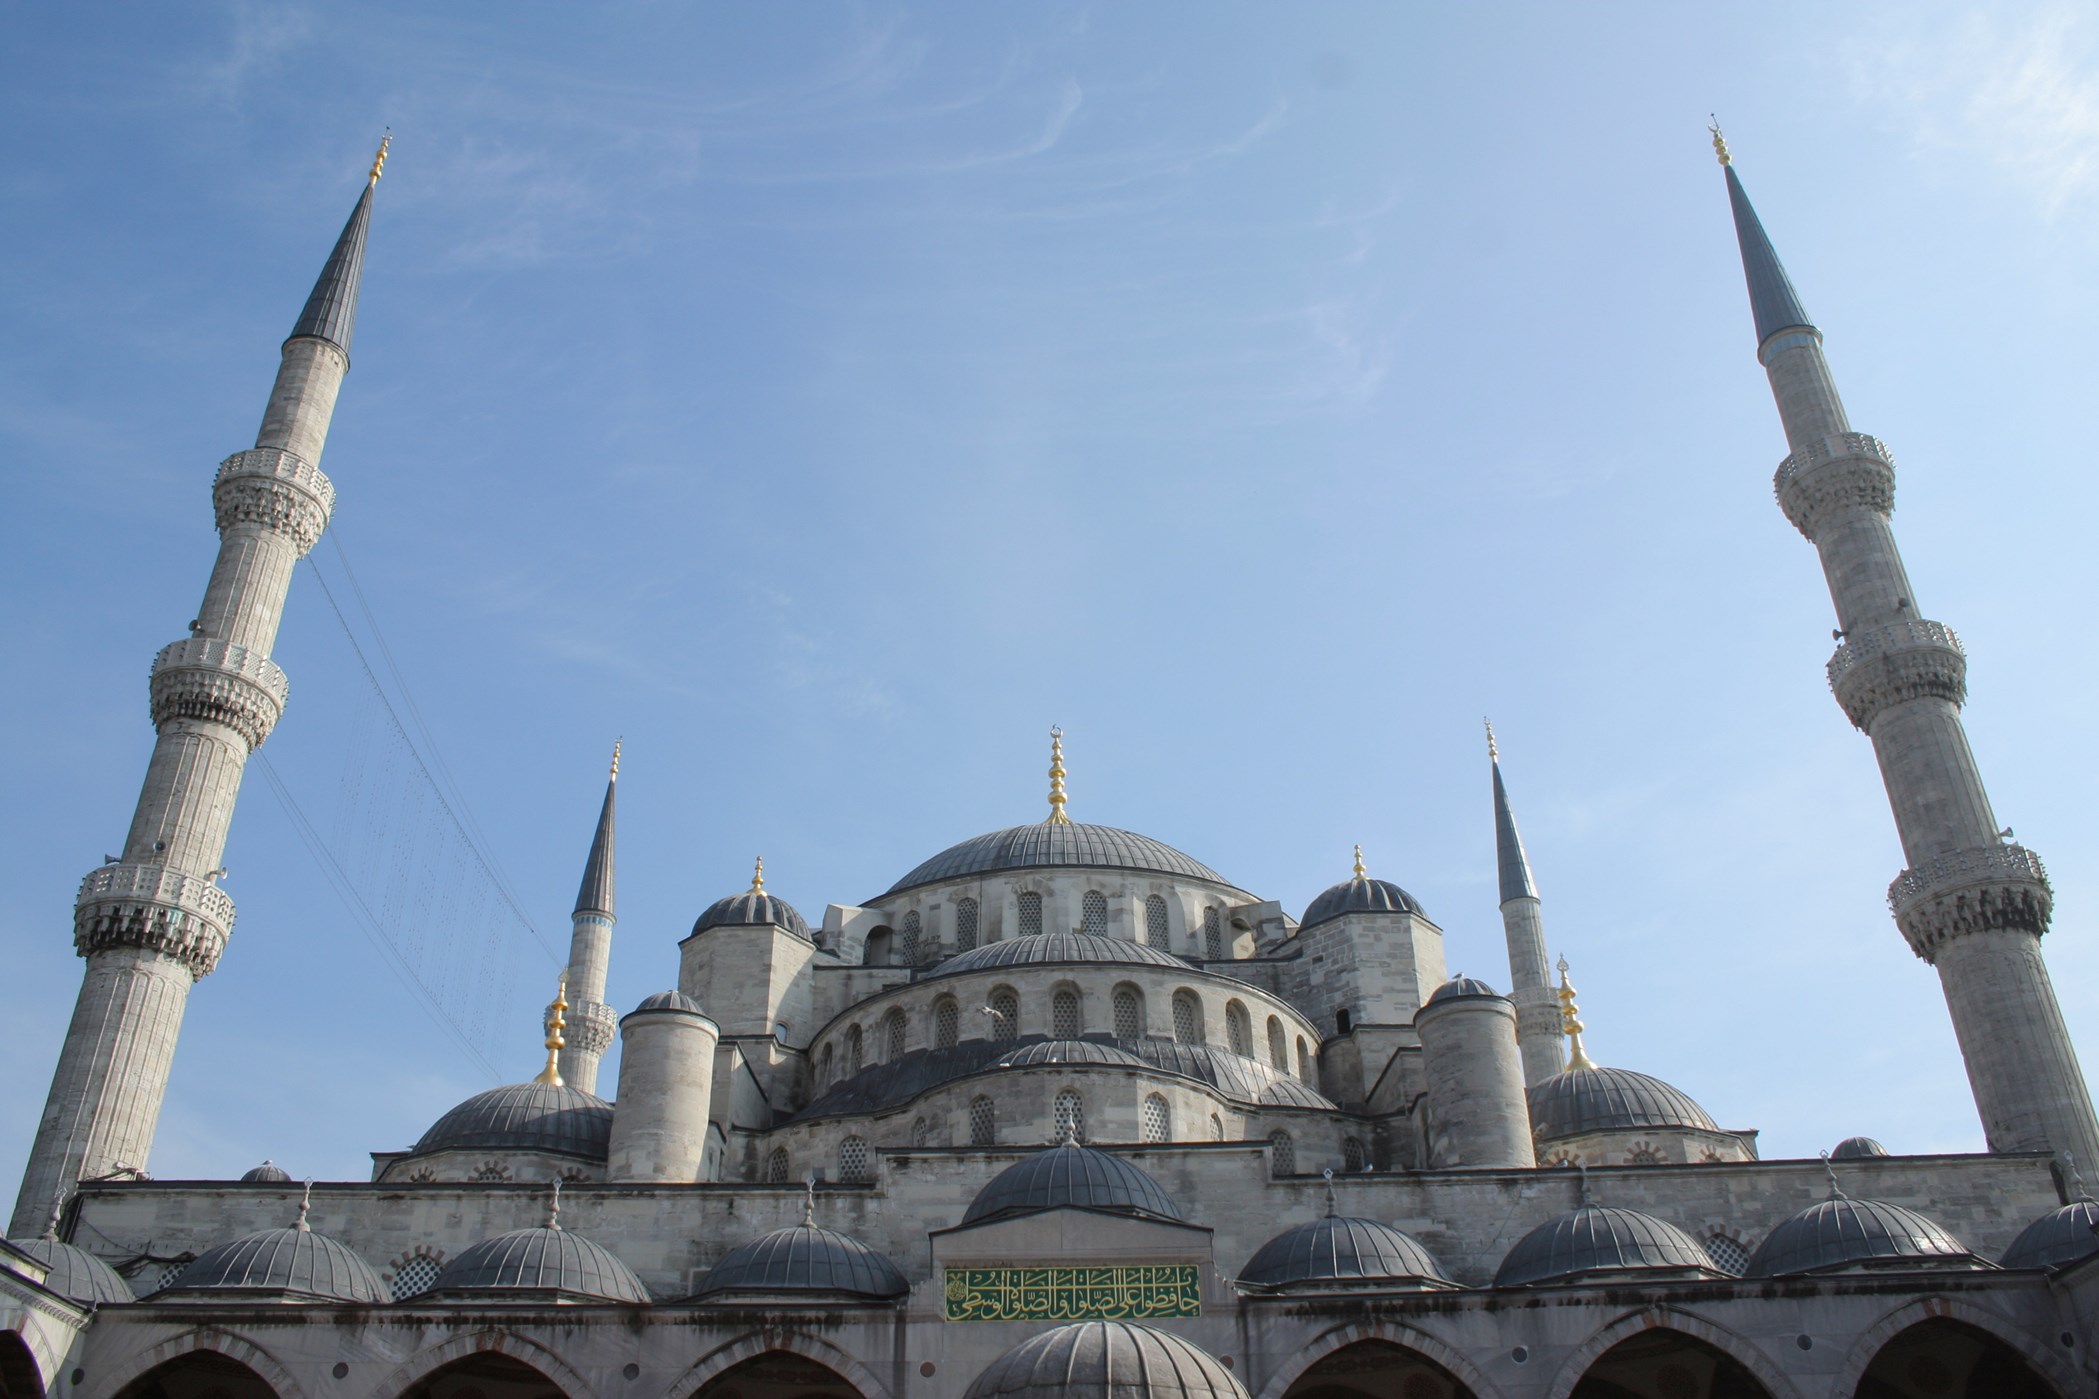 ATRAKCJE ZWIEDZANIE STAMBUŁU W Stambule znajduje się wiele słynnych budowli zarówno świeckich, jak i sakralnych.